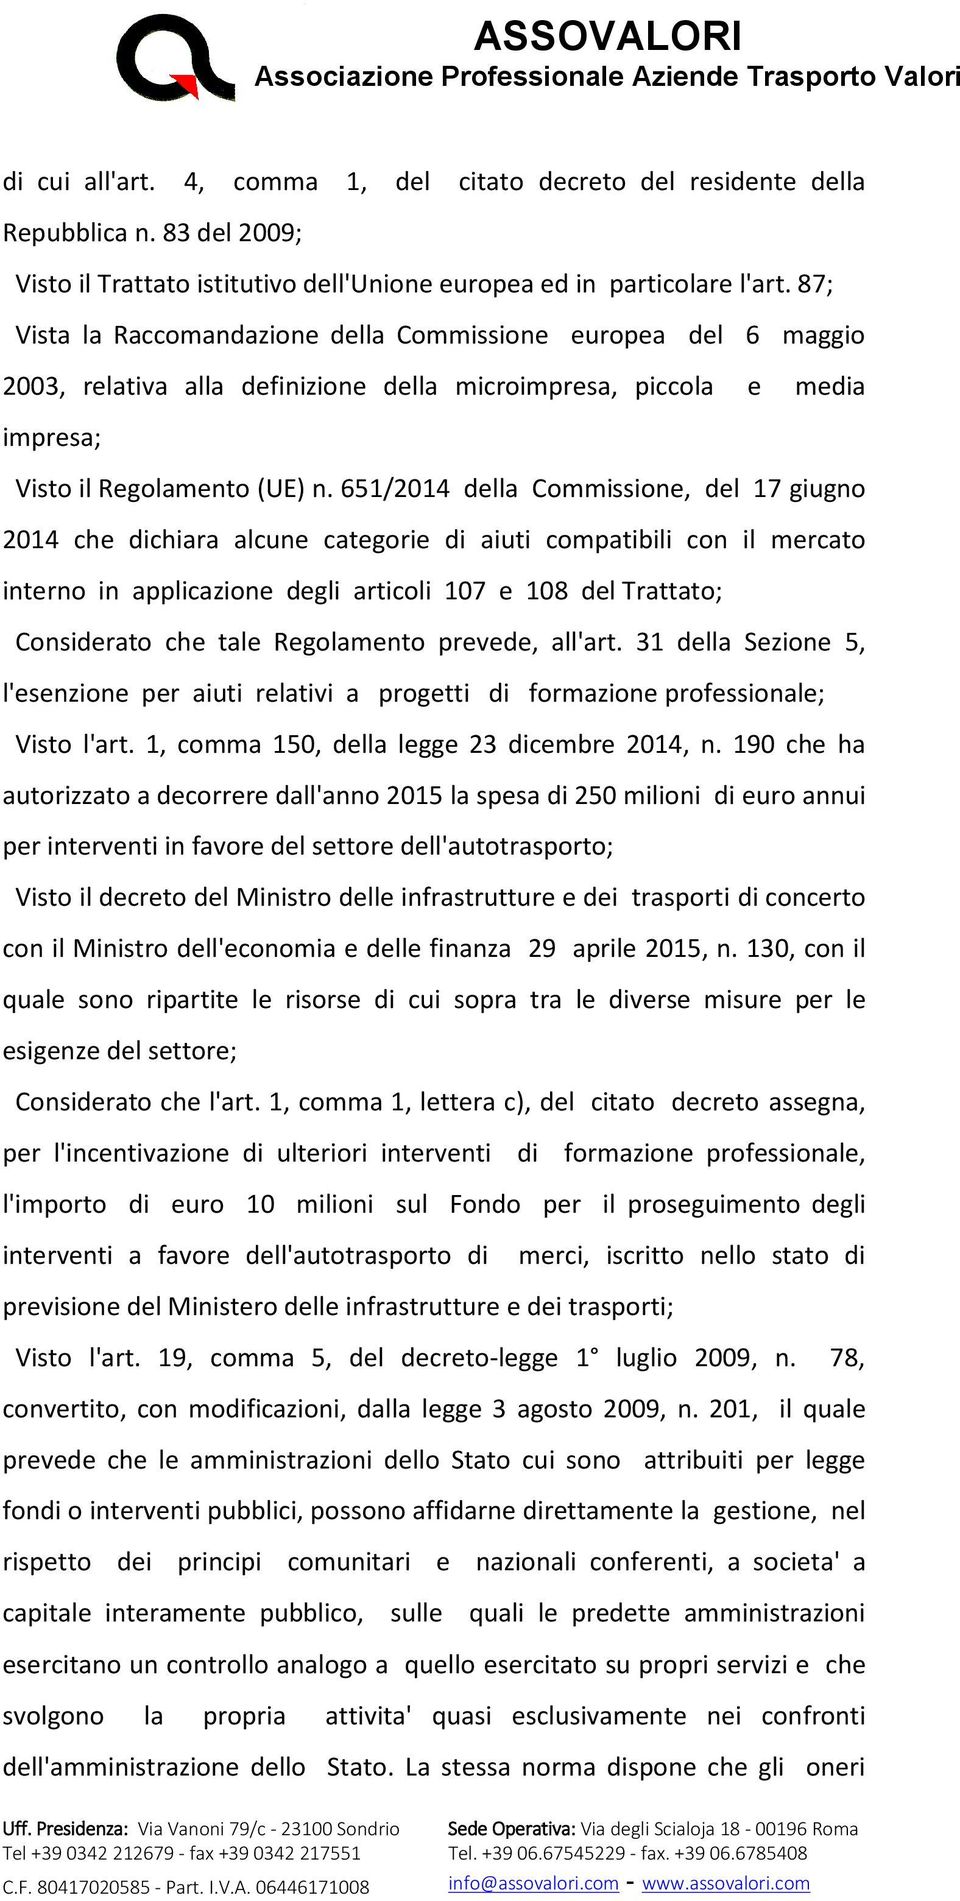 651/2014 della Commissione, del 17 giugno 2014 che dichiara alcune categorie di aiuti compatibili con il mercato interno in applicazione degli articoli 107 e 108 del Trattato; Considerato che tale